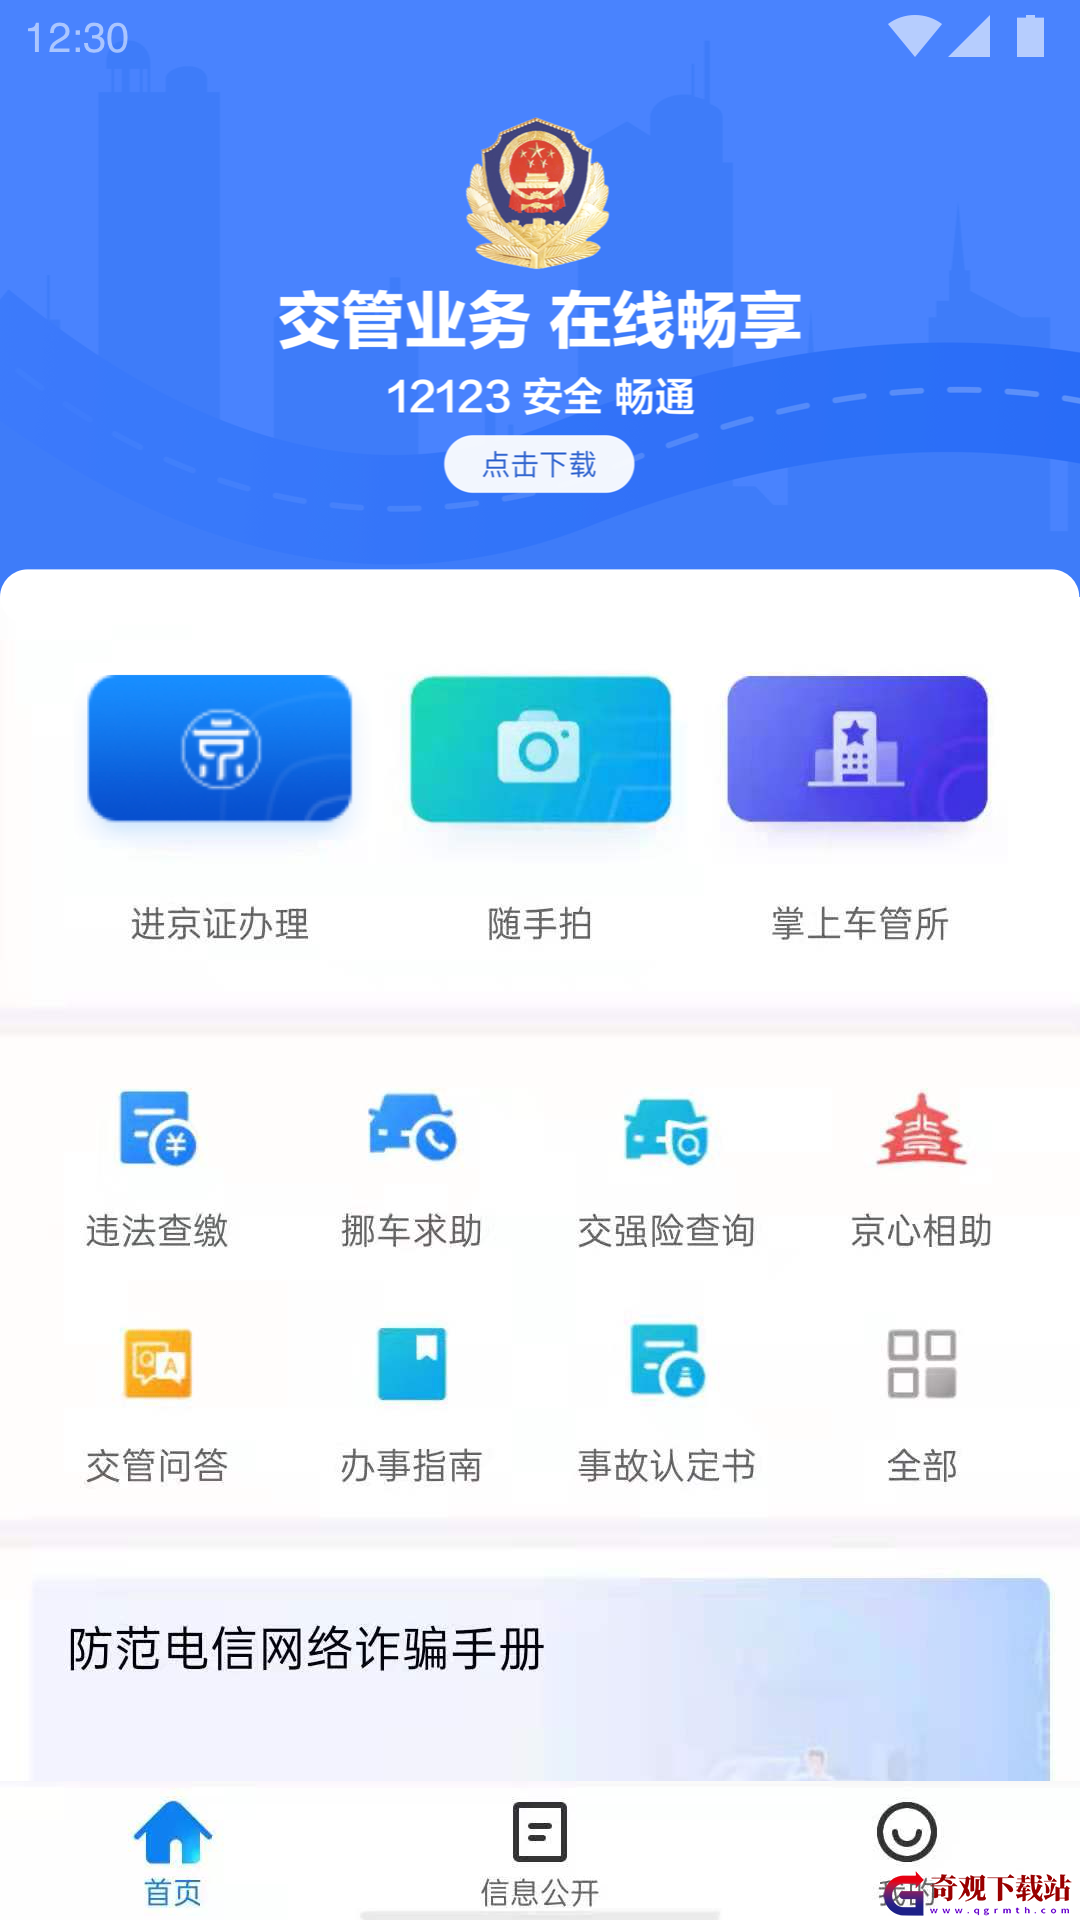 北京交*
app,北京交*
